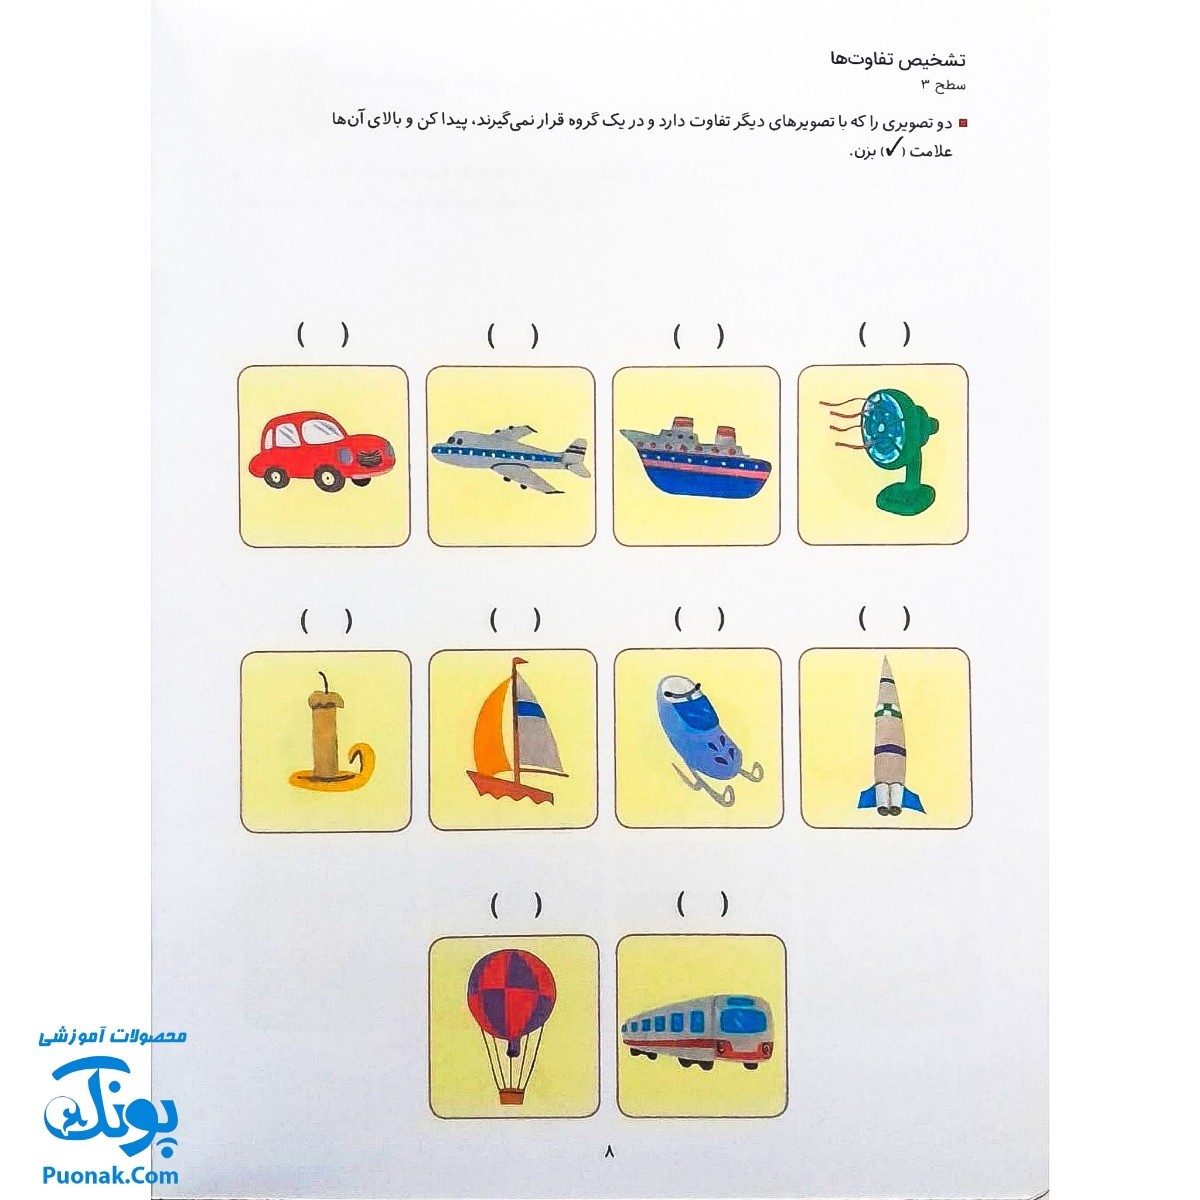 کتاب کار کومن ادراک استدلال قیاسی ۲ (پرورش مهارت های تفکر کودک از طریق فعالیت های مانند تطابق تصویرها و تشخیص شباهت ها و تفاوت ها)